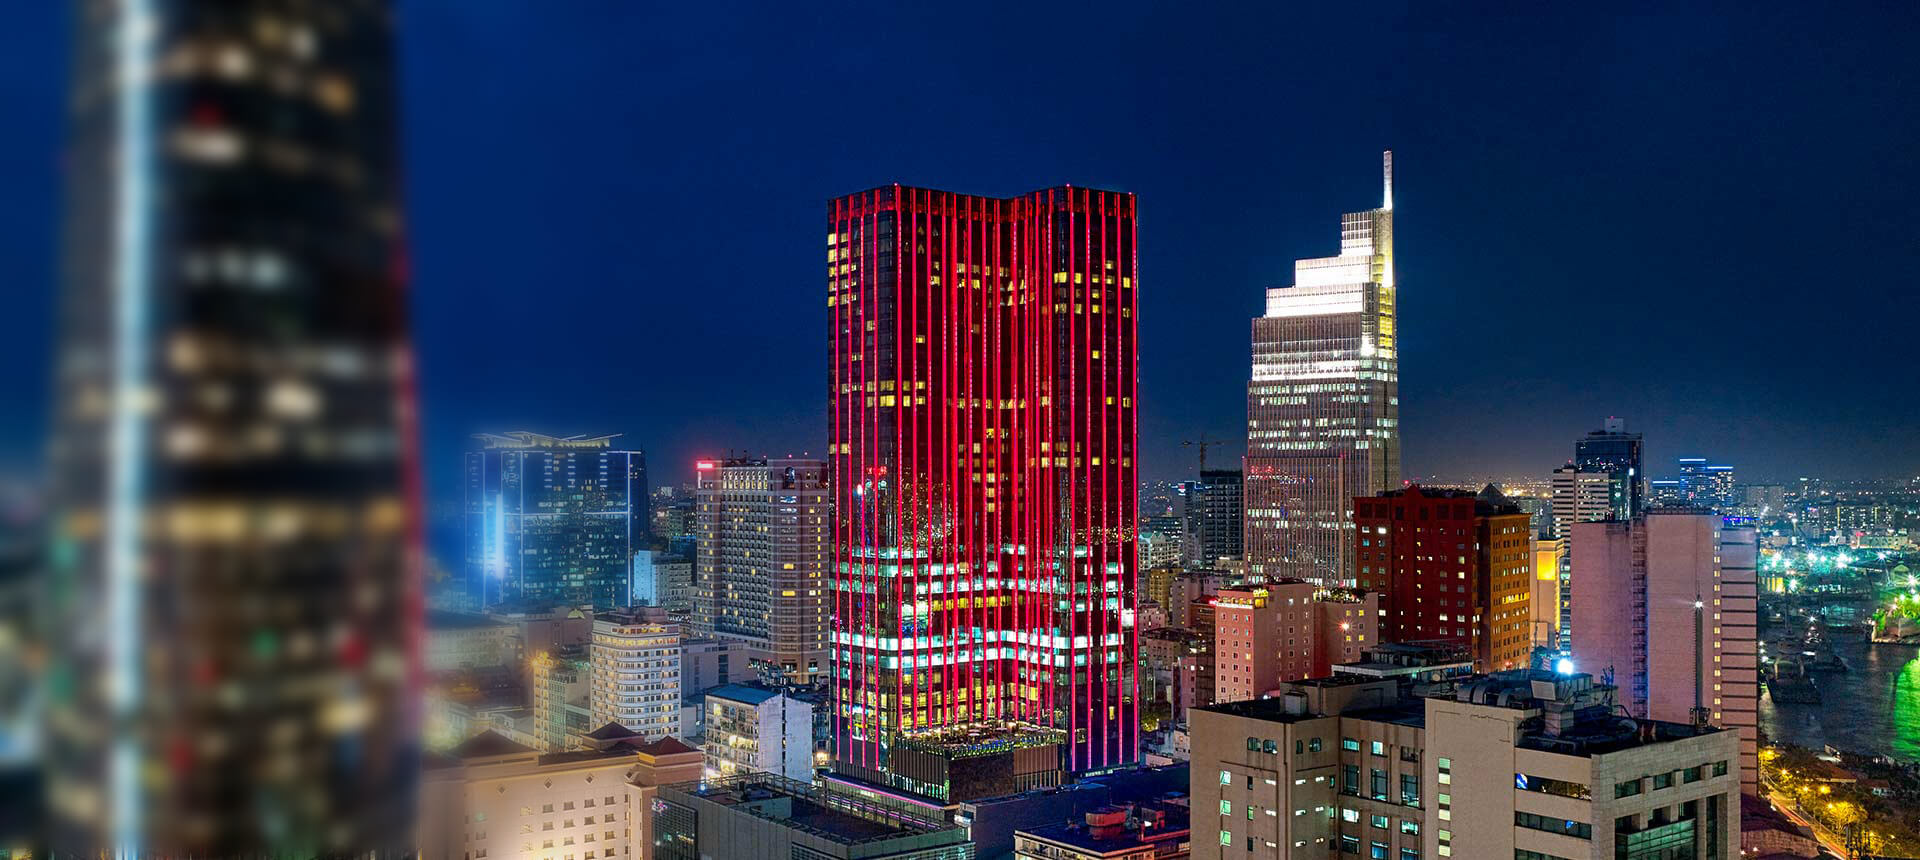 Saigon Timesquare in red